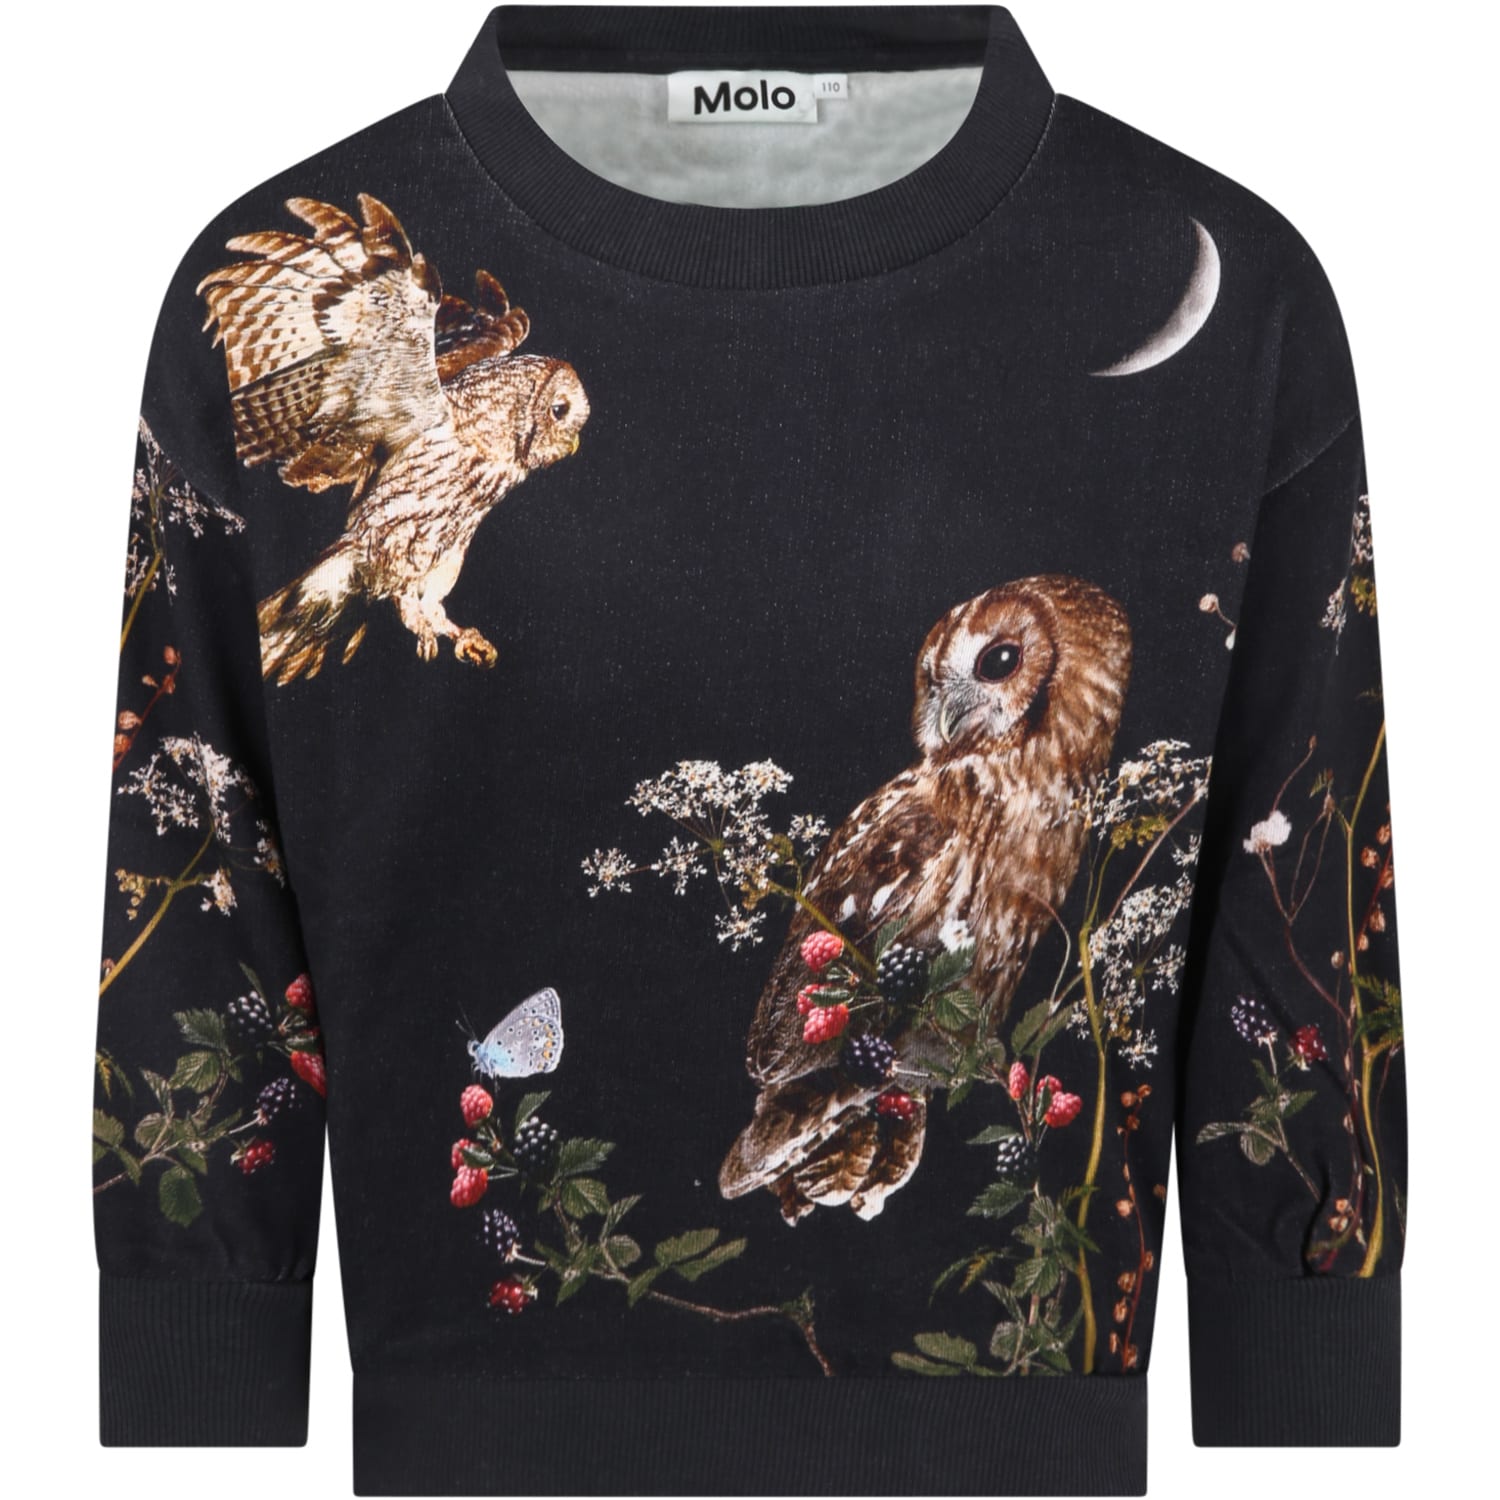 Molo Black Sweatshirt For Girl With Owls